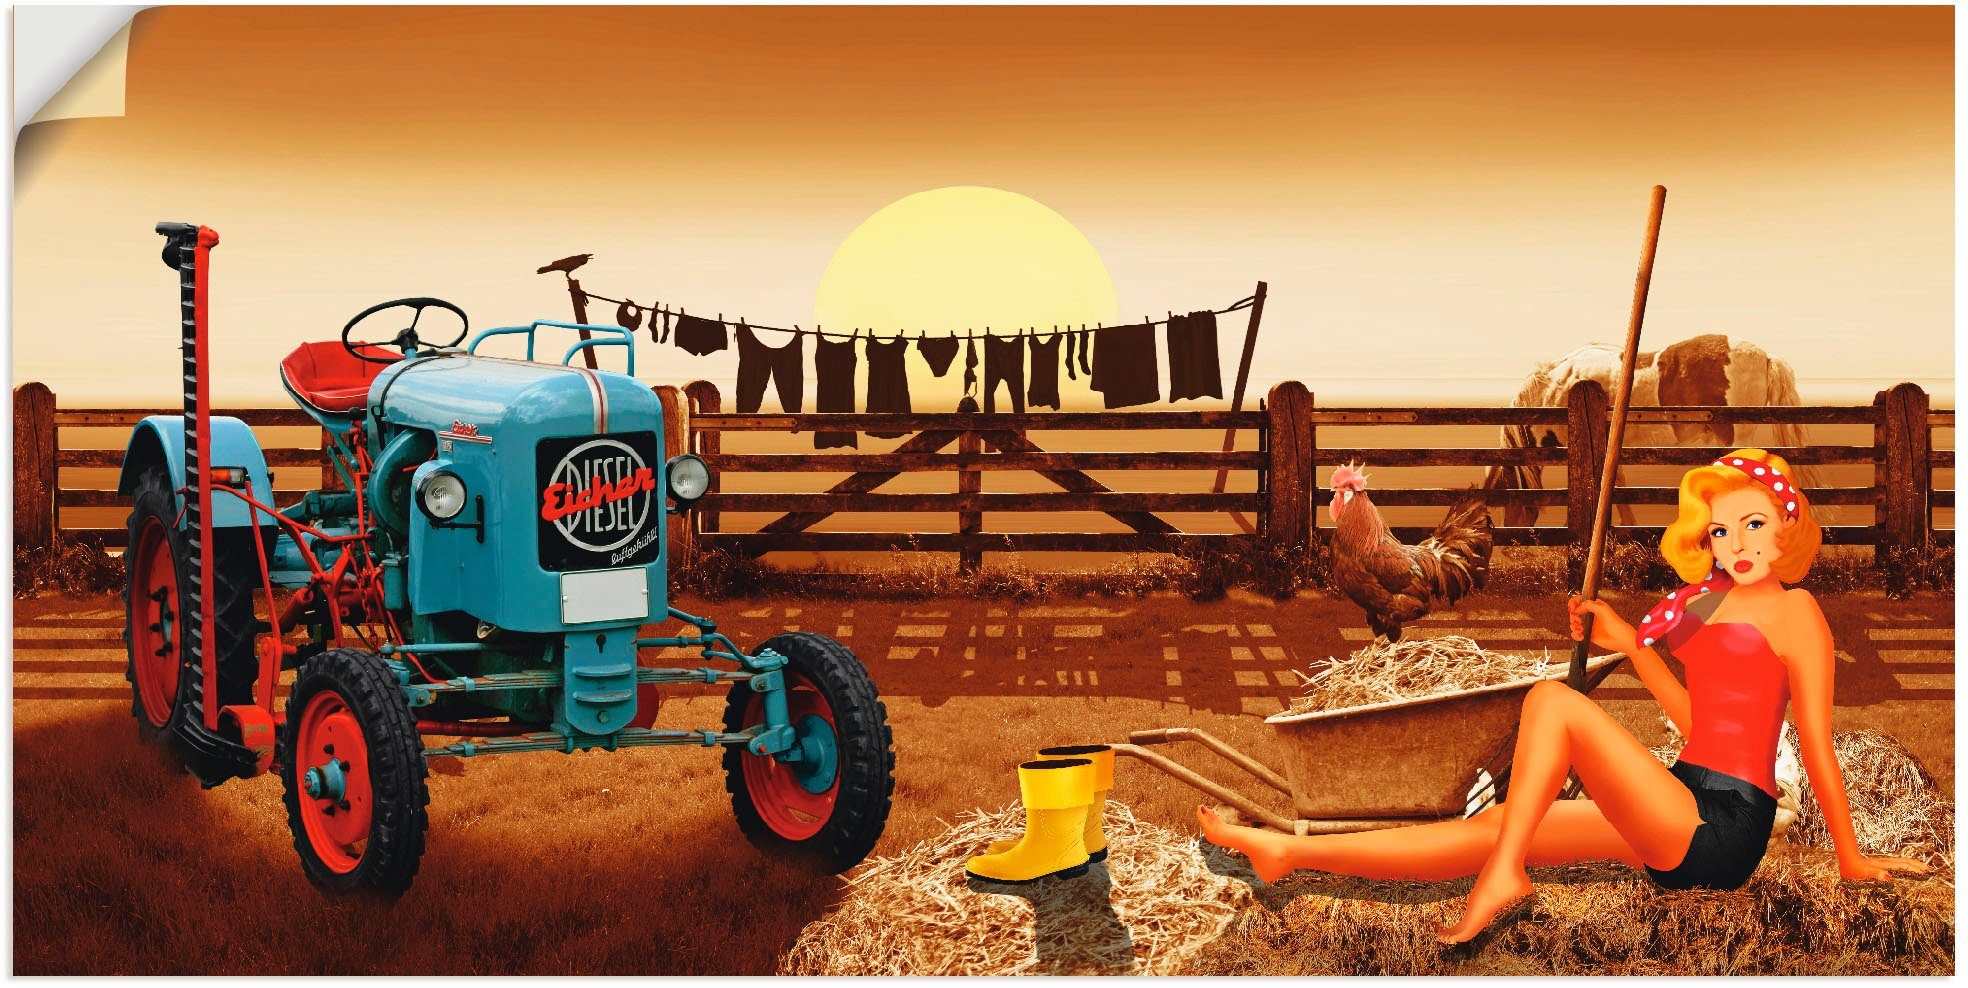 Artland Artprint Pin-upgirl met tractor op boerderij in vele afmetingen & productsoorten - artprint van aluminium / artprint voor buiten, artprint op linnen, poster, muursticker /